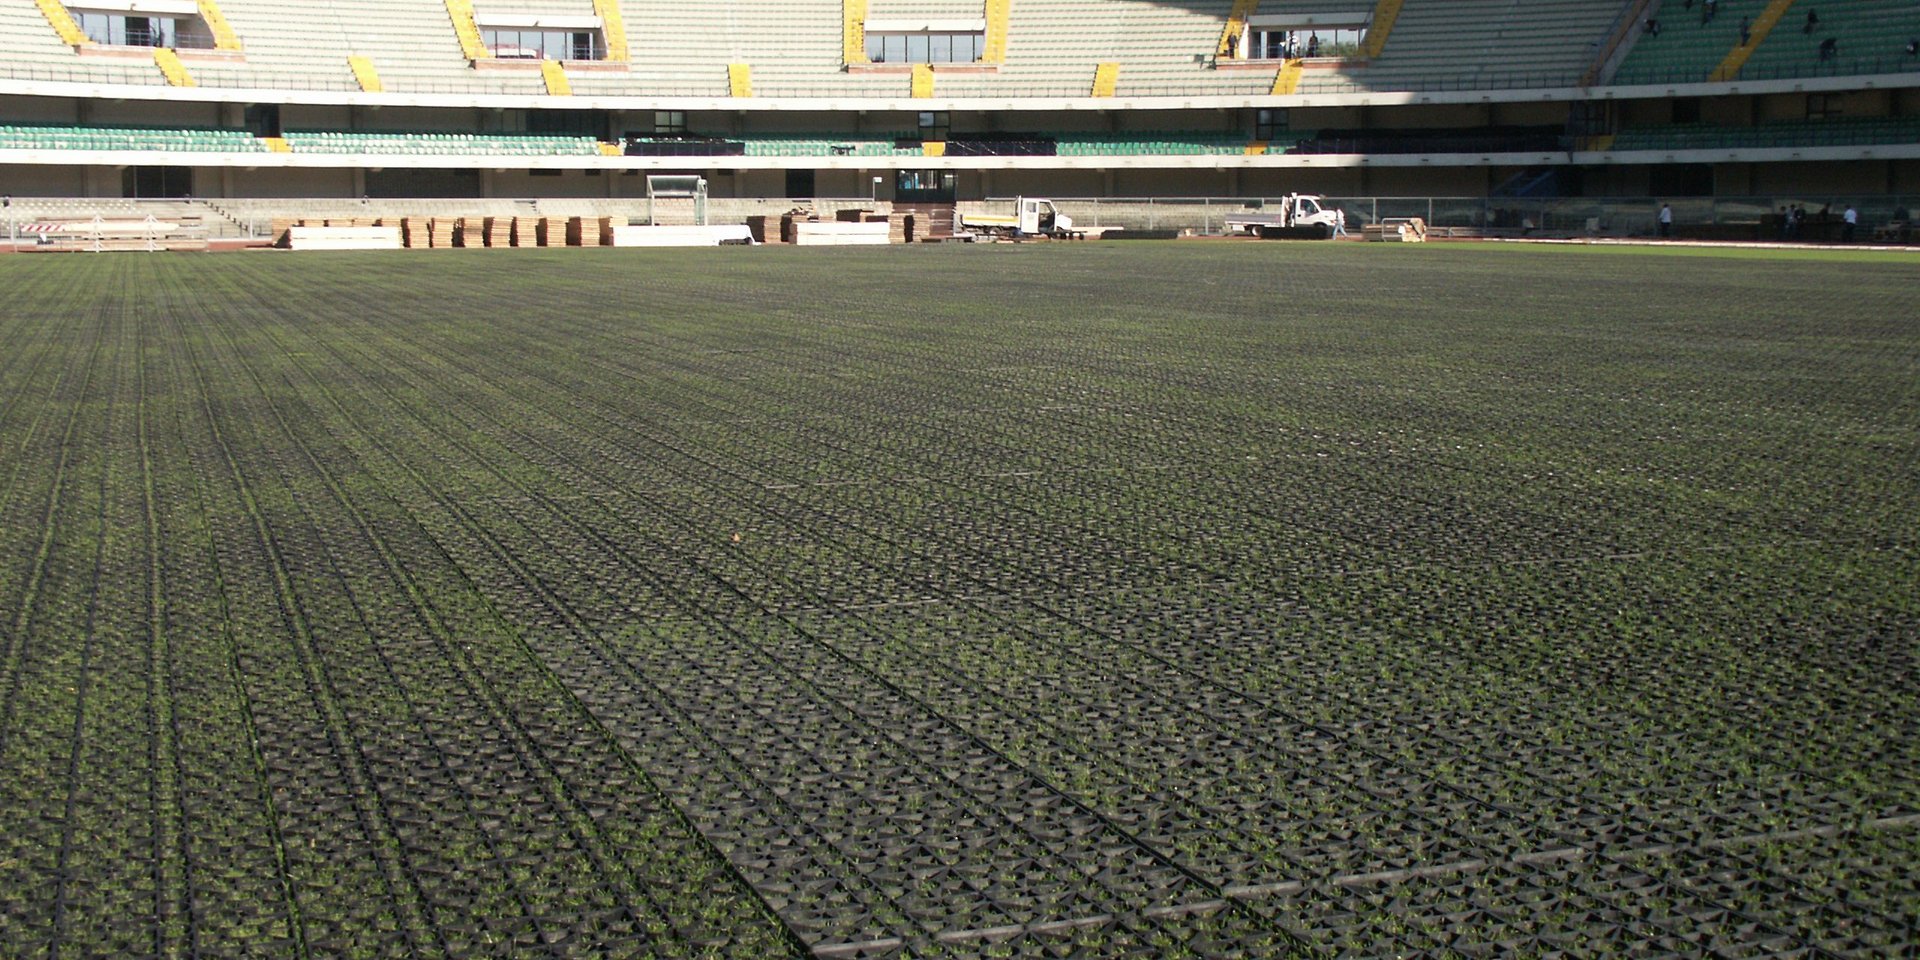 Kunststoffrasengitter auf dem Boden eines grossen Stadions mit grüner Wiese und leeren Sitzplätzen.